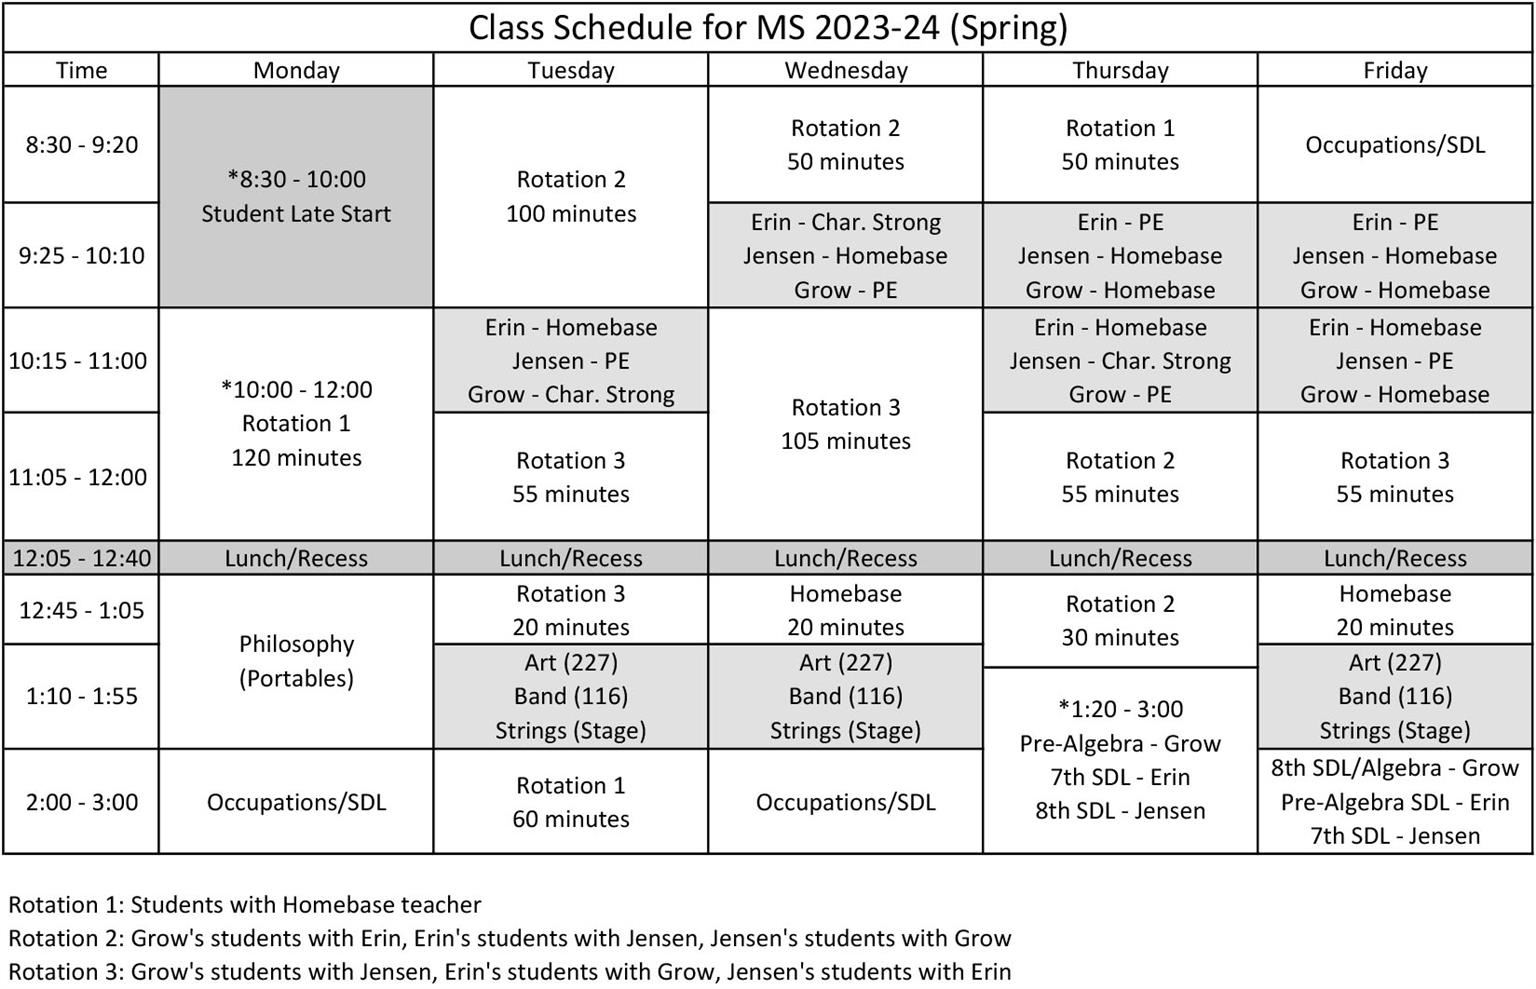 Master Schedule